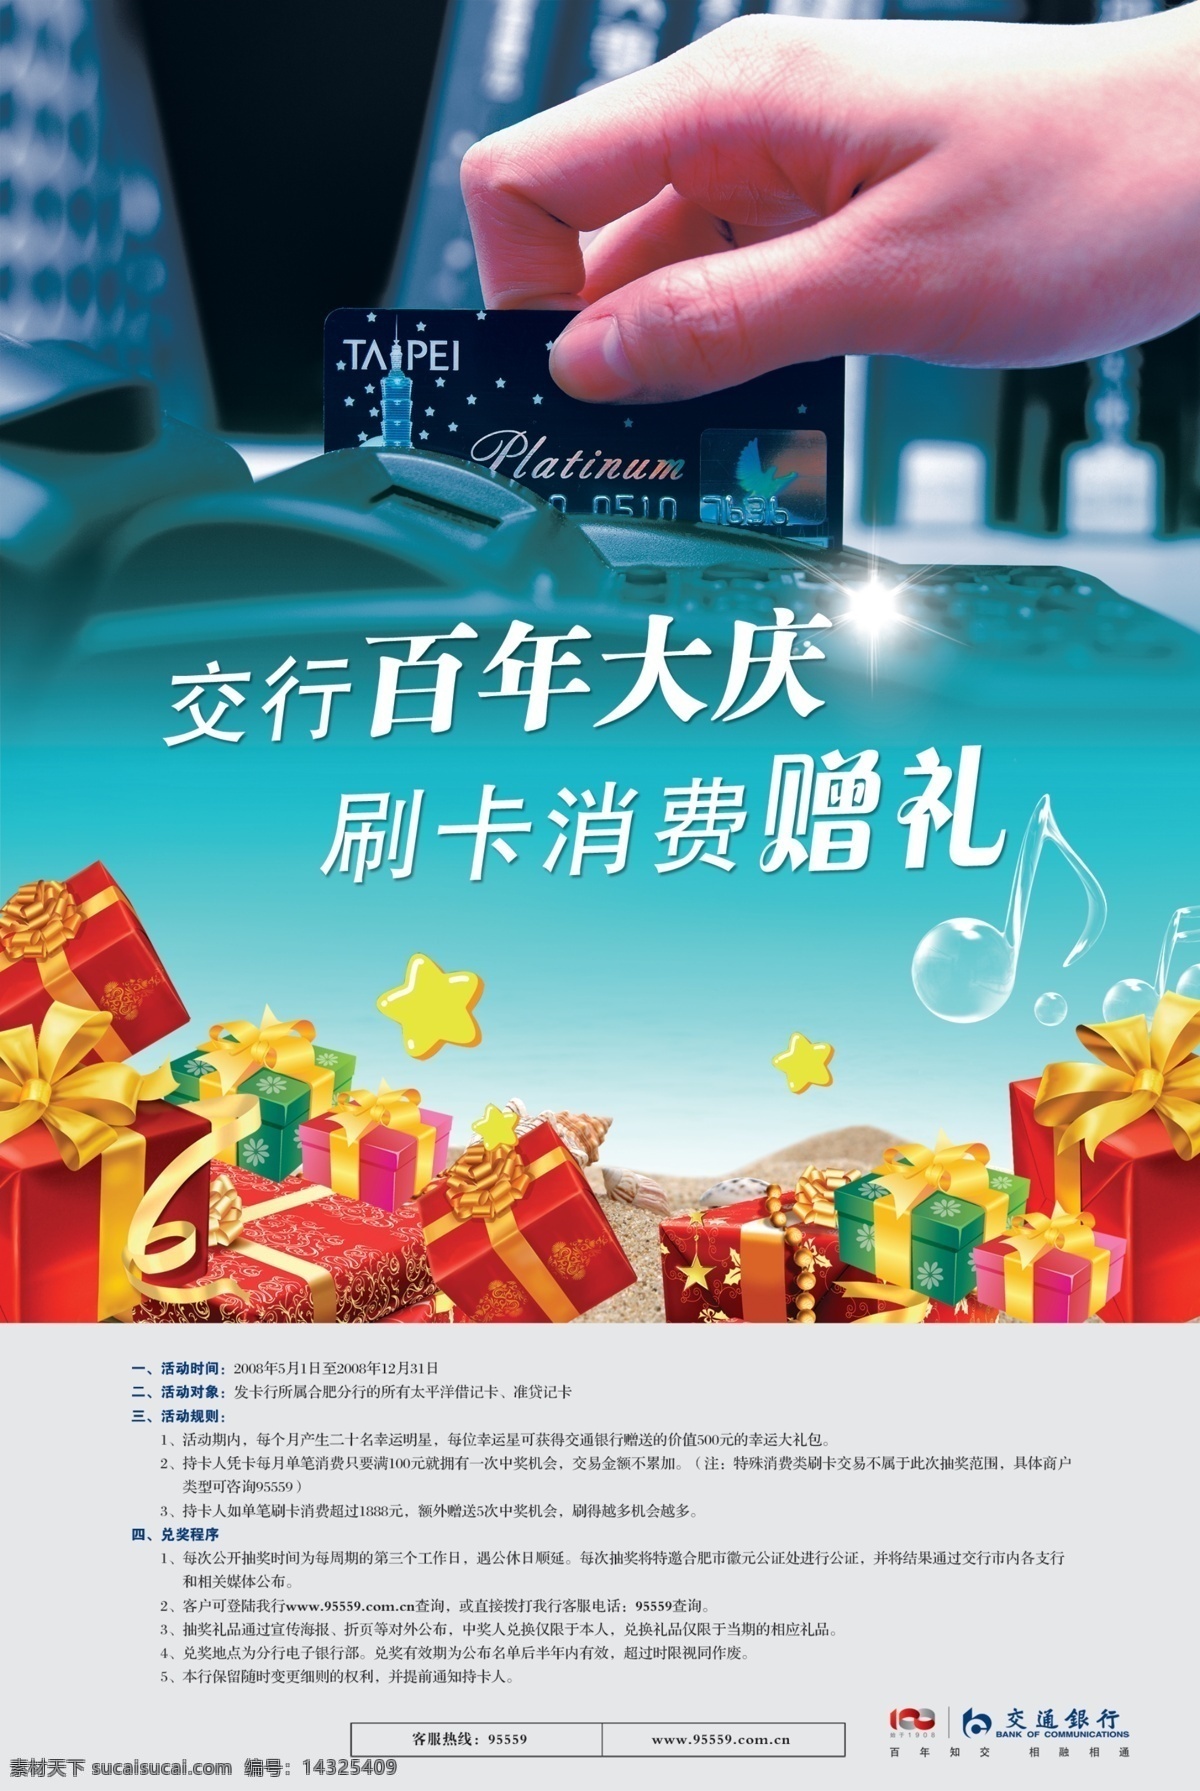 银行宣传单 银行dm单 理财 手 卡 礼物 广告单 广告设计模板 国内广告设计 源文件库 青色 天蓝色